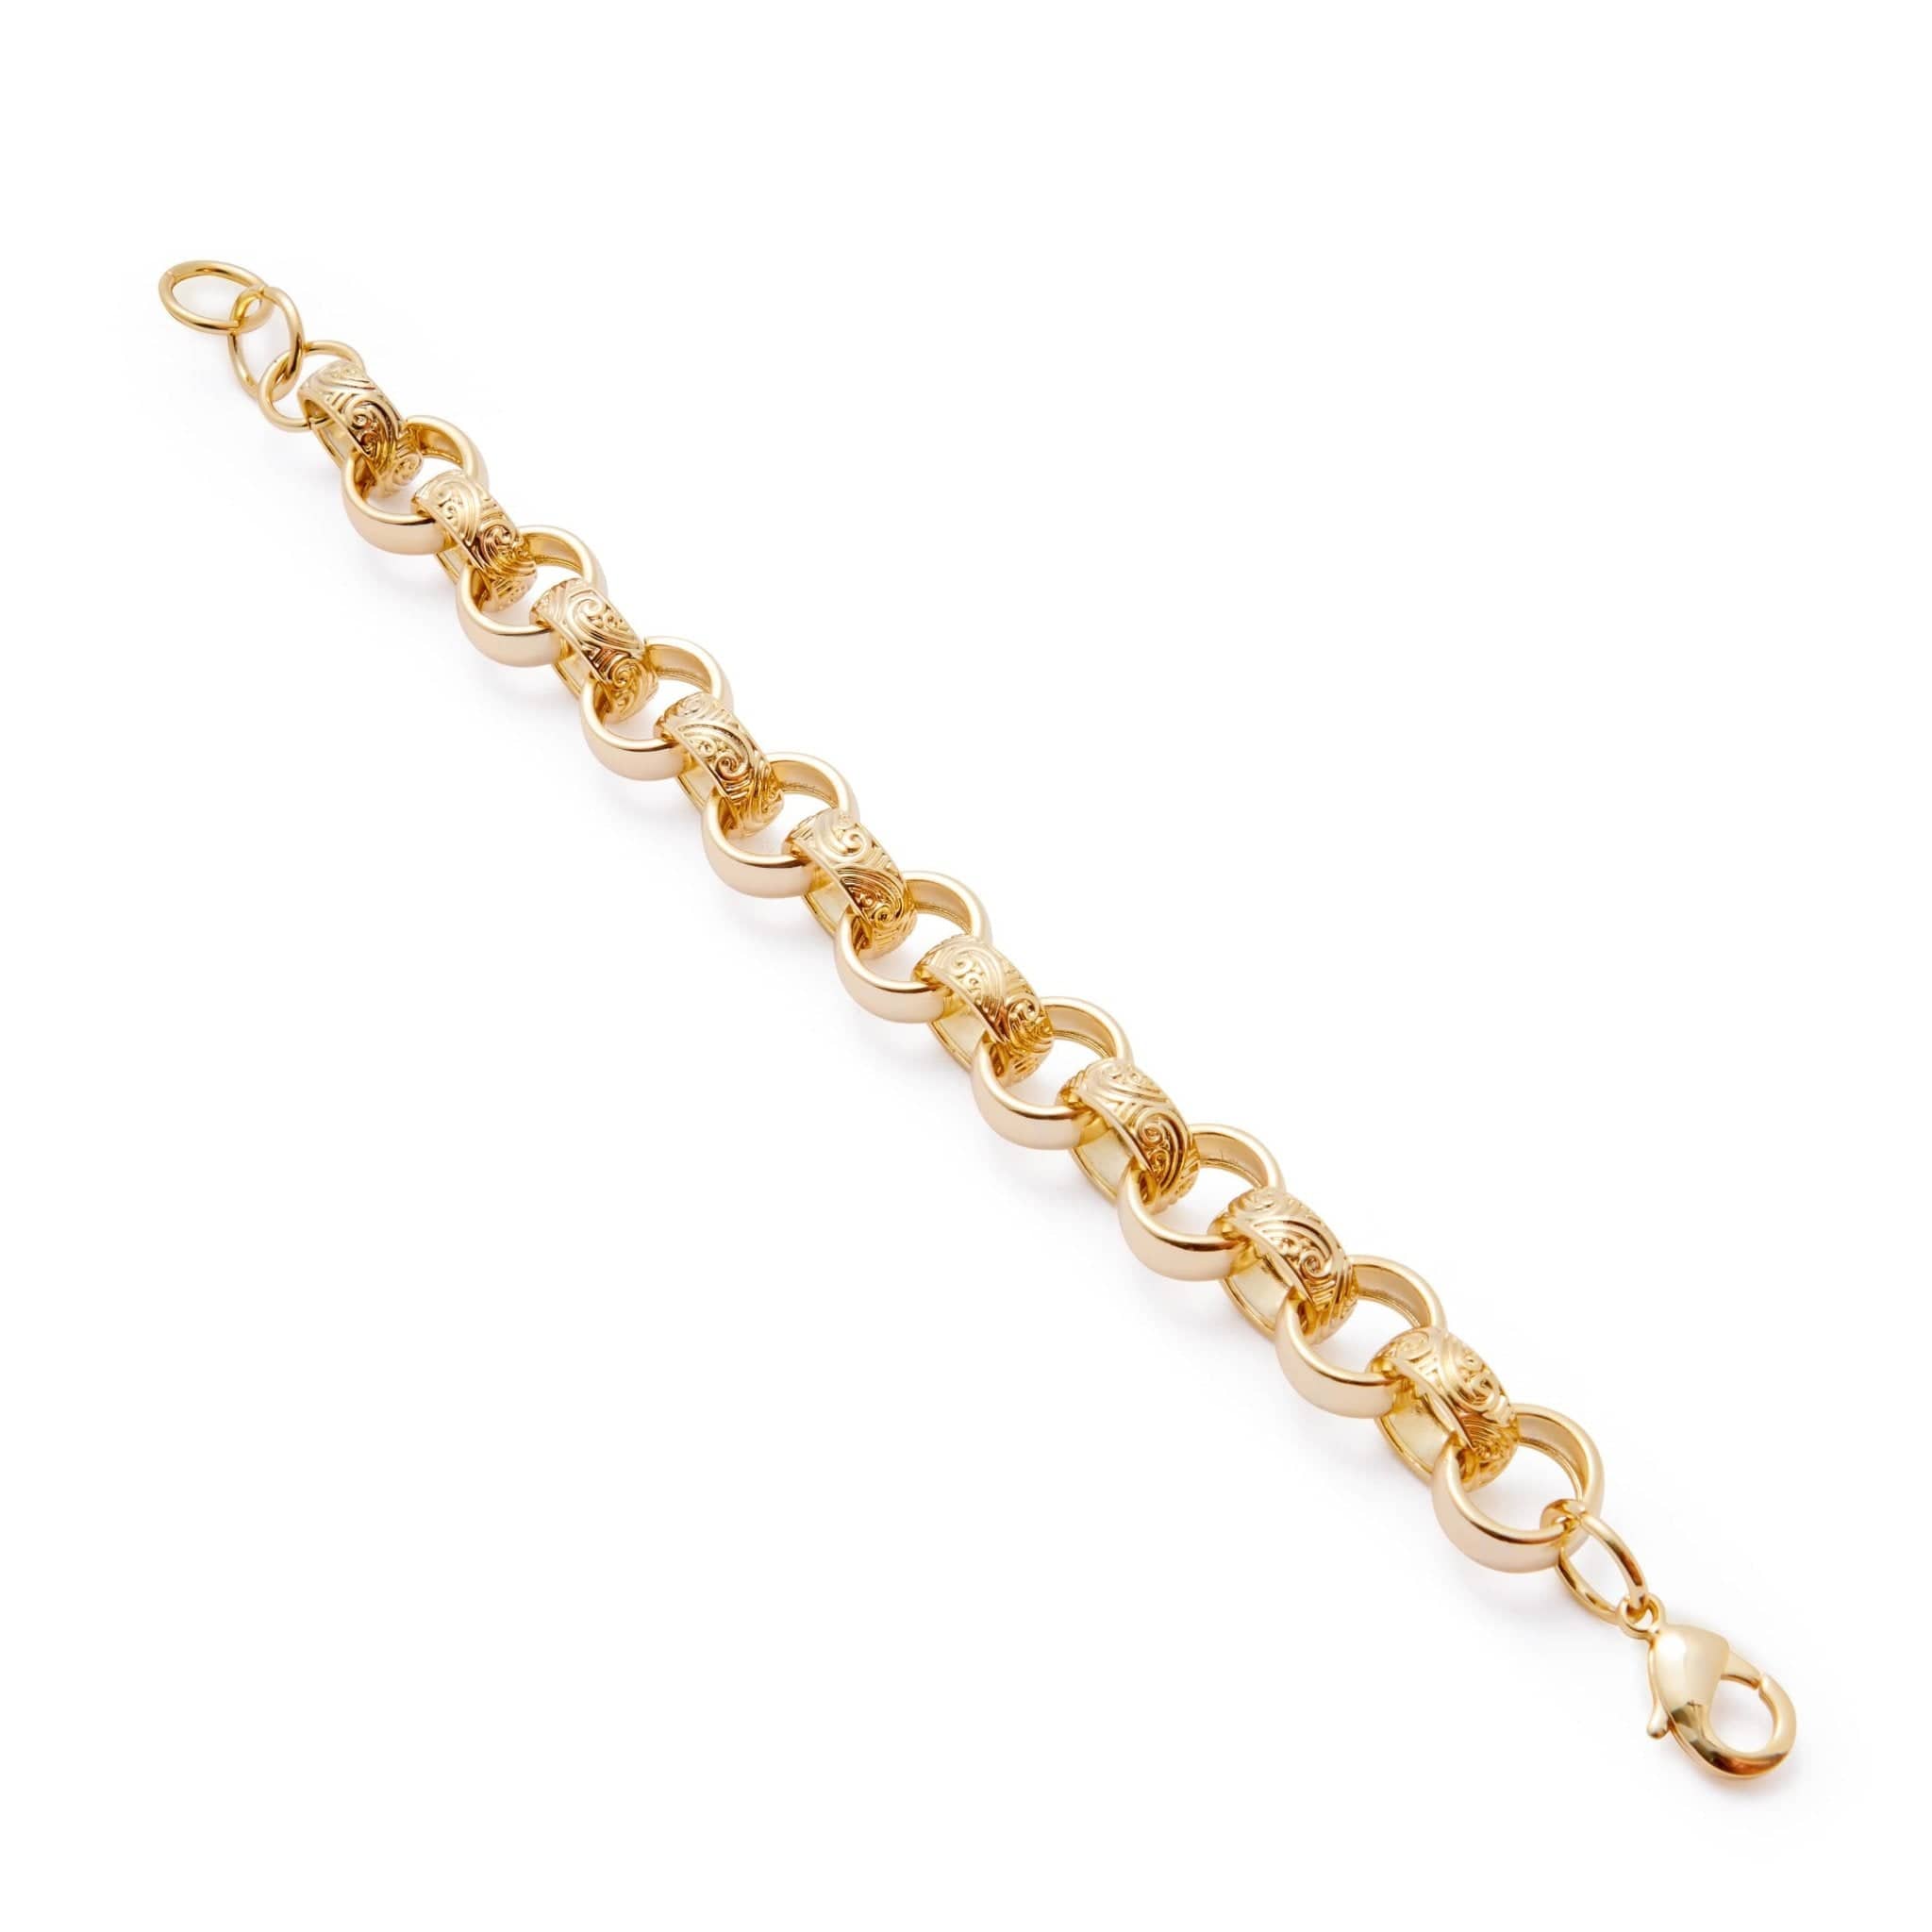 18k Gold-Bonded Bracelets PATTERNED BELCHER BRACELET 15MM